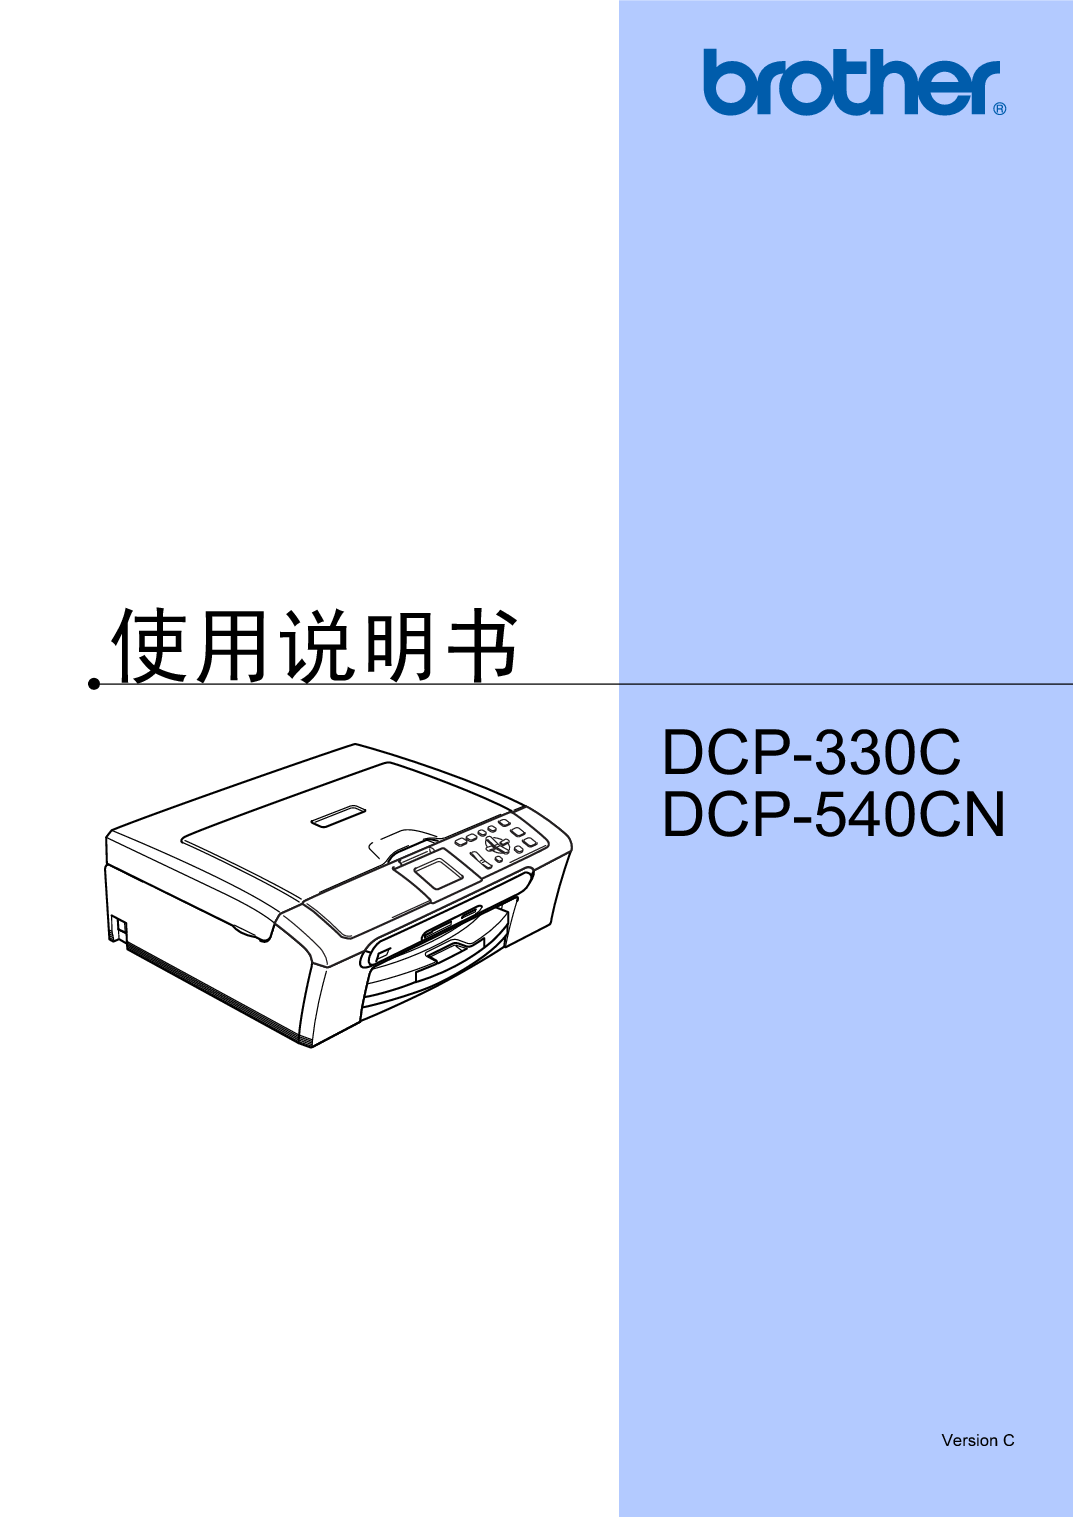 兄弟 Brother DCP-330C 使用说明书 封面